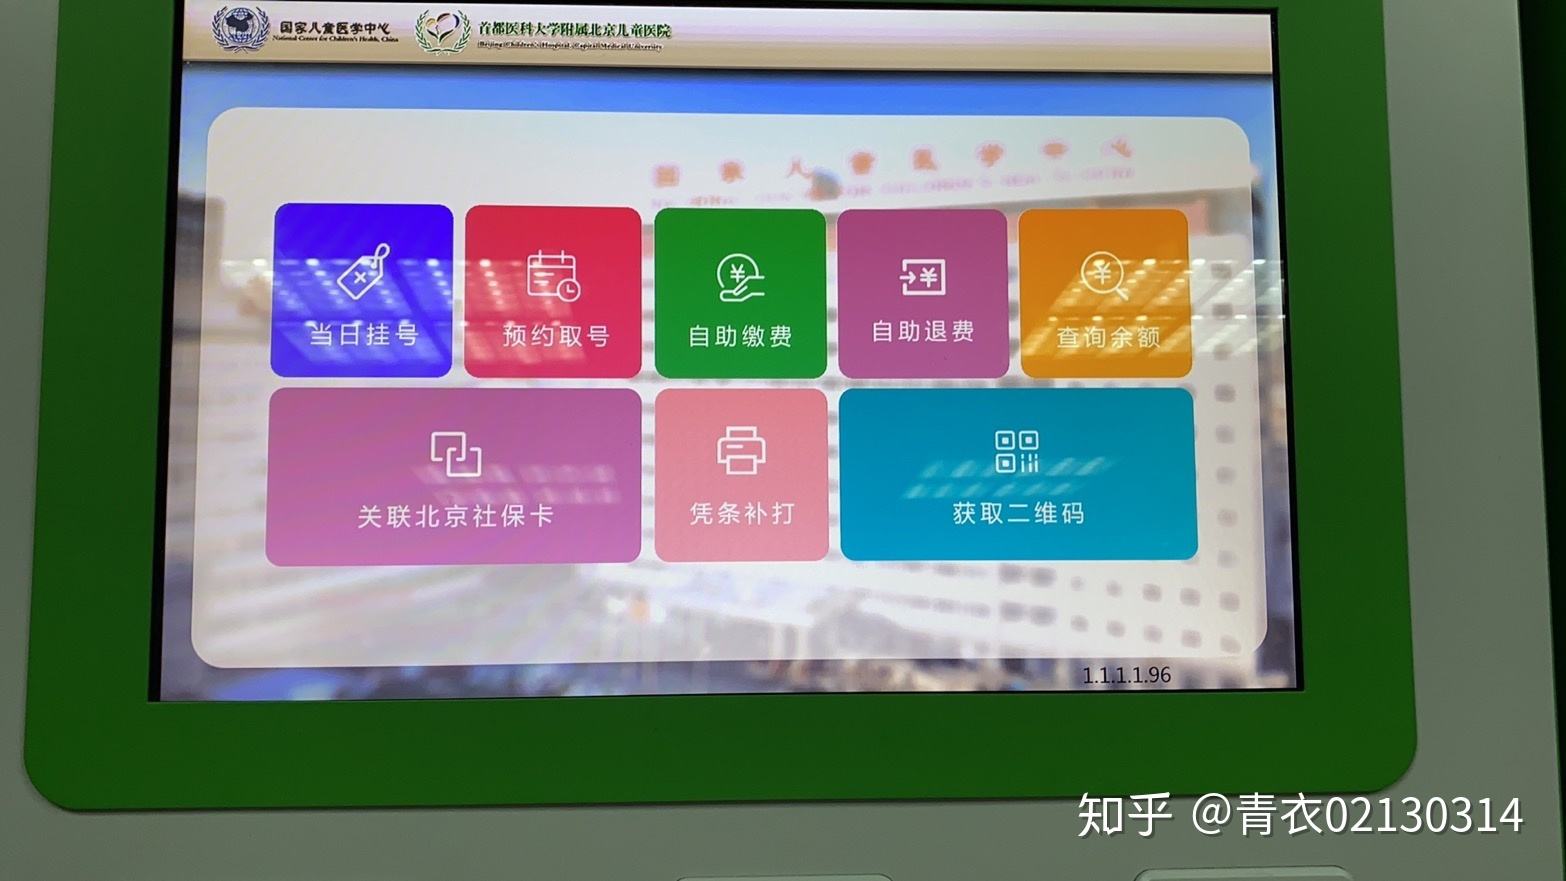 包含北京医院挂号号贩子联系方式第一时间安排【秒出号】的词条